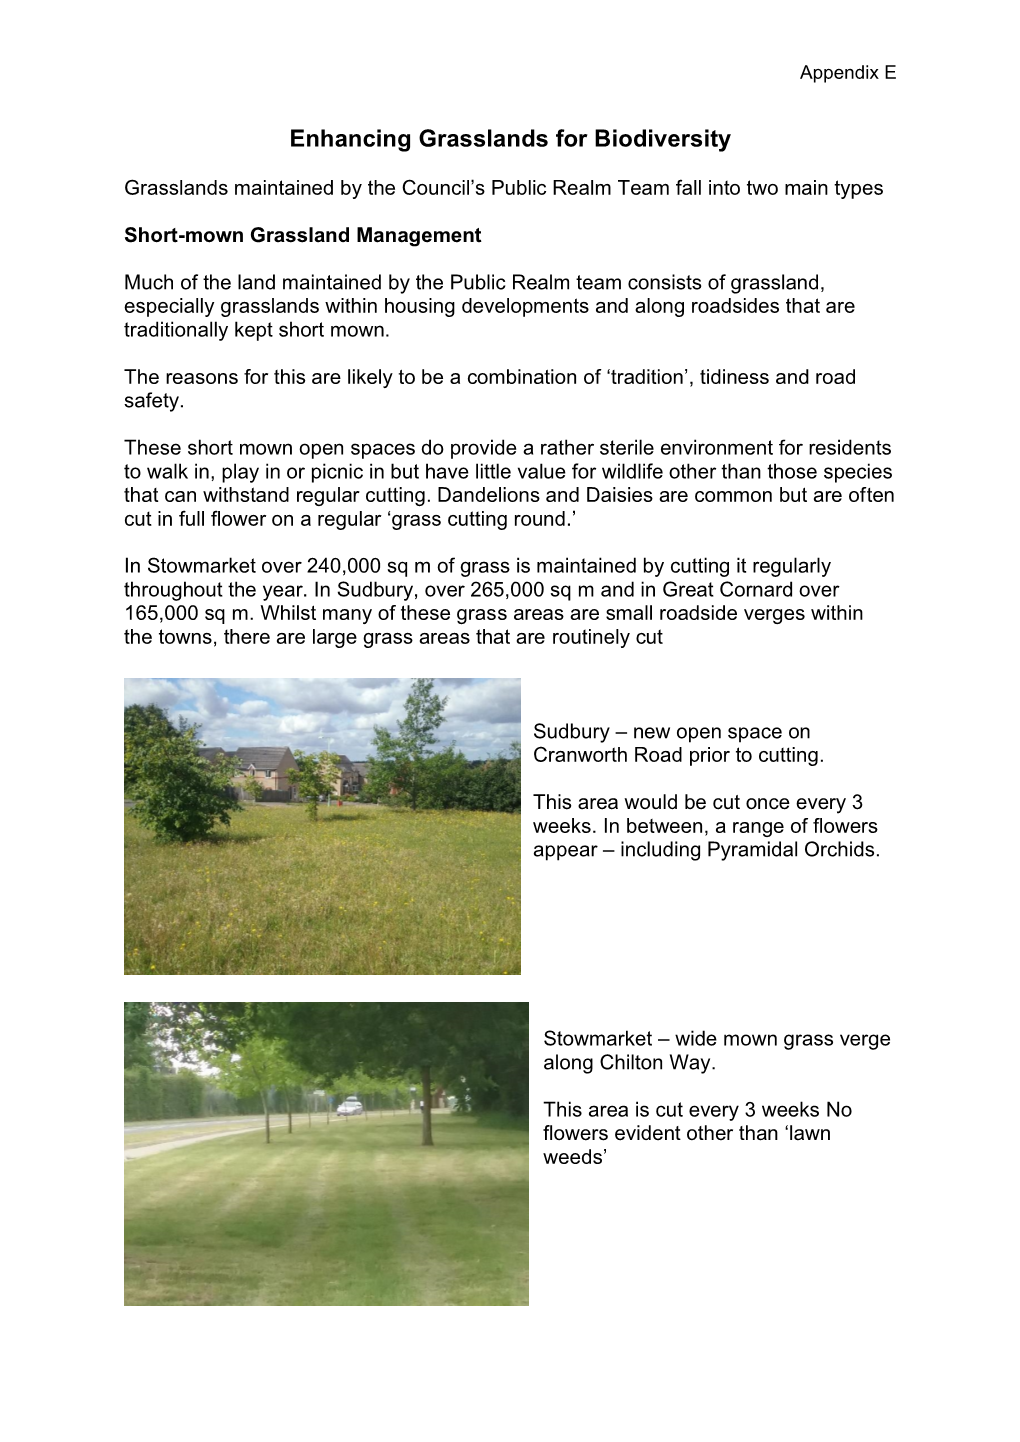 Enhancing Grasslands for Biodiversity , Item 19. PDF 835 KB